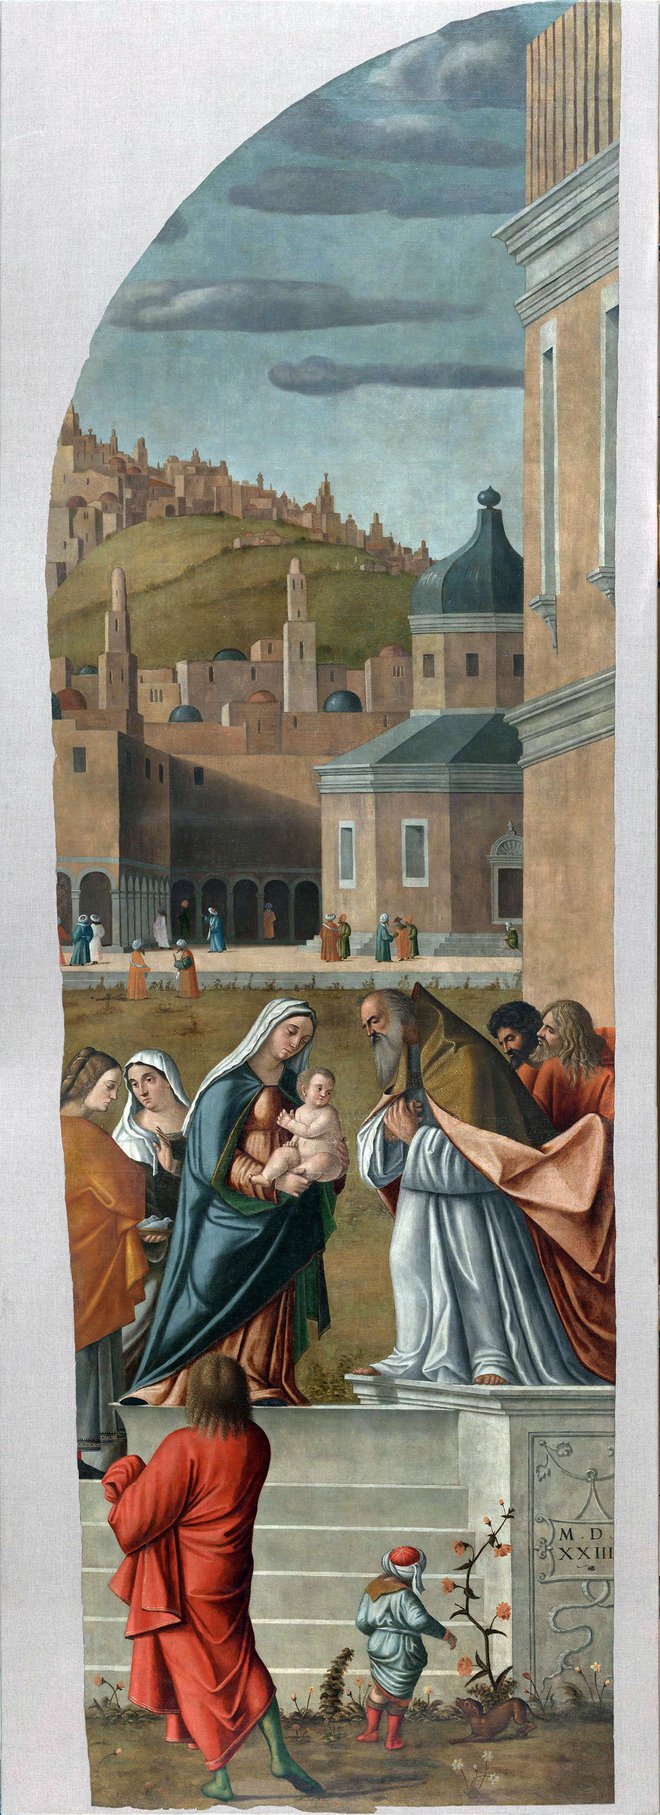 Predstavitev v templju (1523, letnica zapisana na platnu), olje in tempera na platnu, 421 X 126 cm. Cerkev Marijinega vnebovzetja v Kopru Foto Restavratorski center ZVKDS